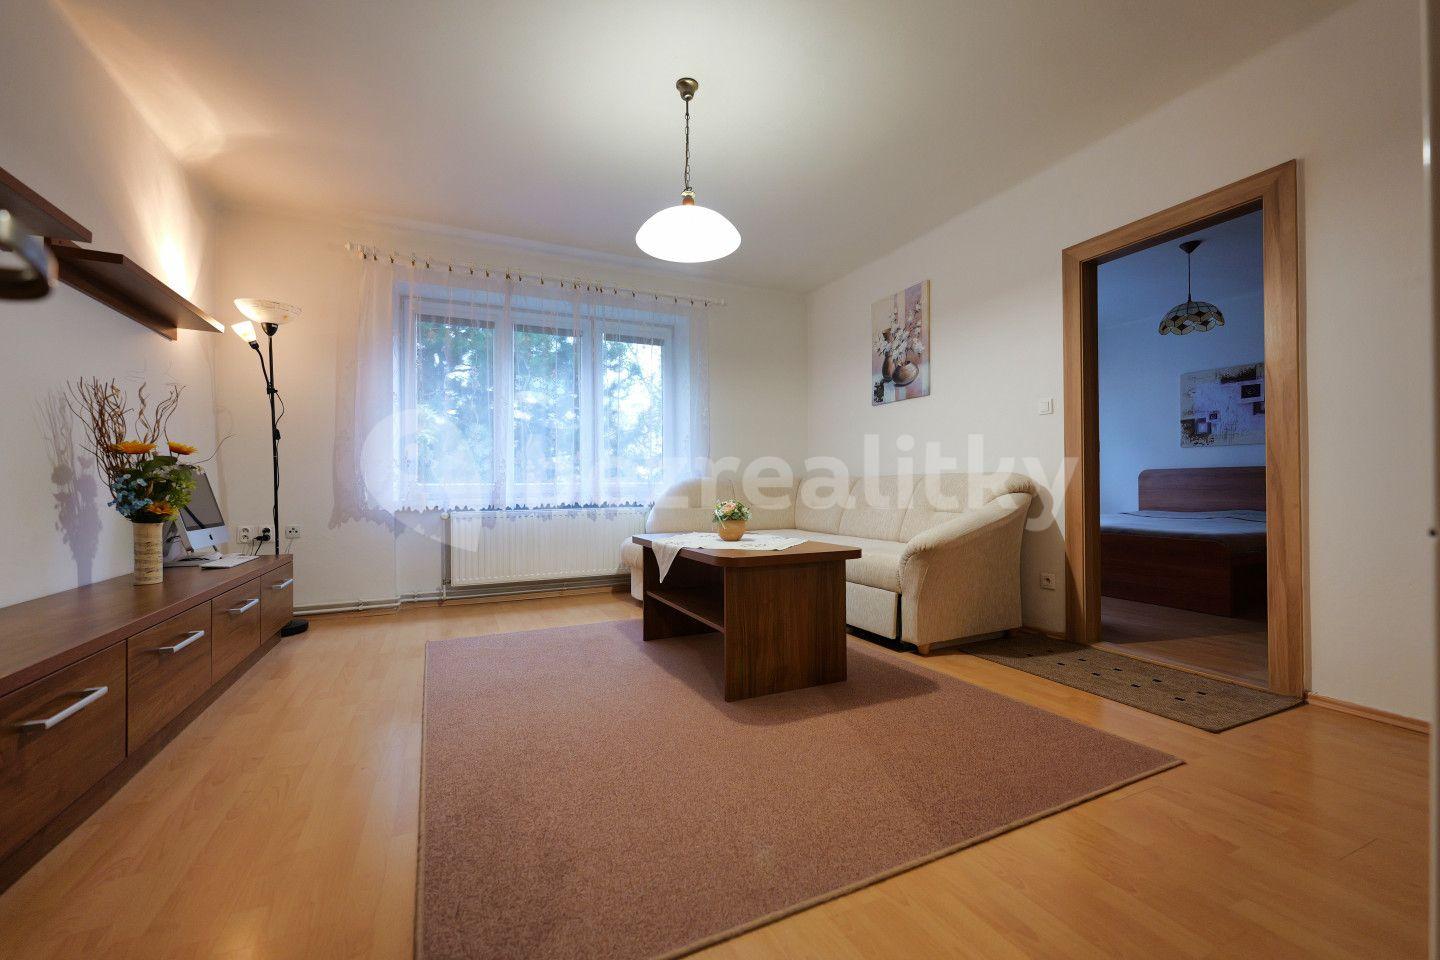 2 bedroom flat for sale, 67 m², Ulička, Kroměříž, Zlínský Region